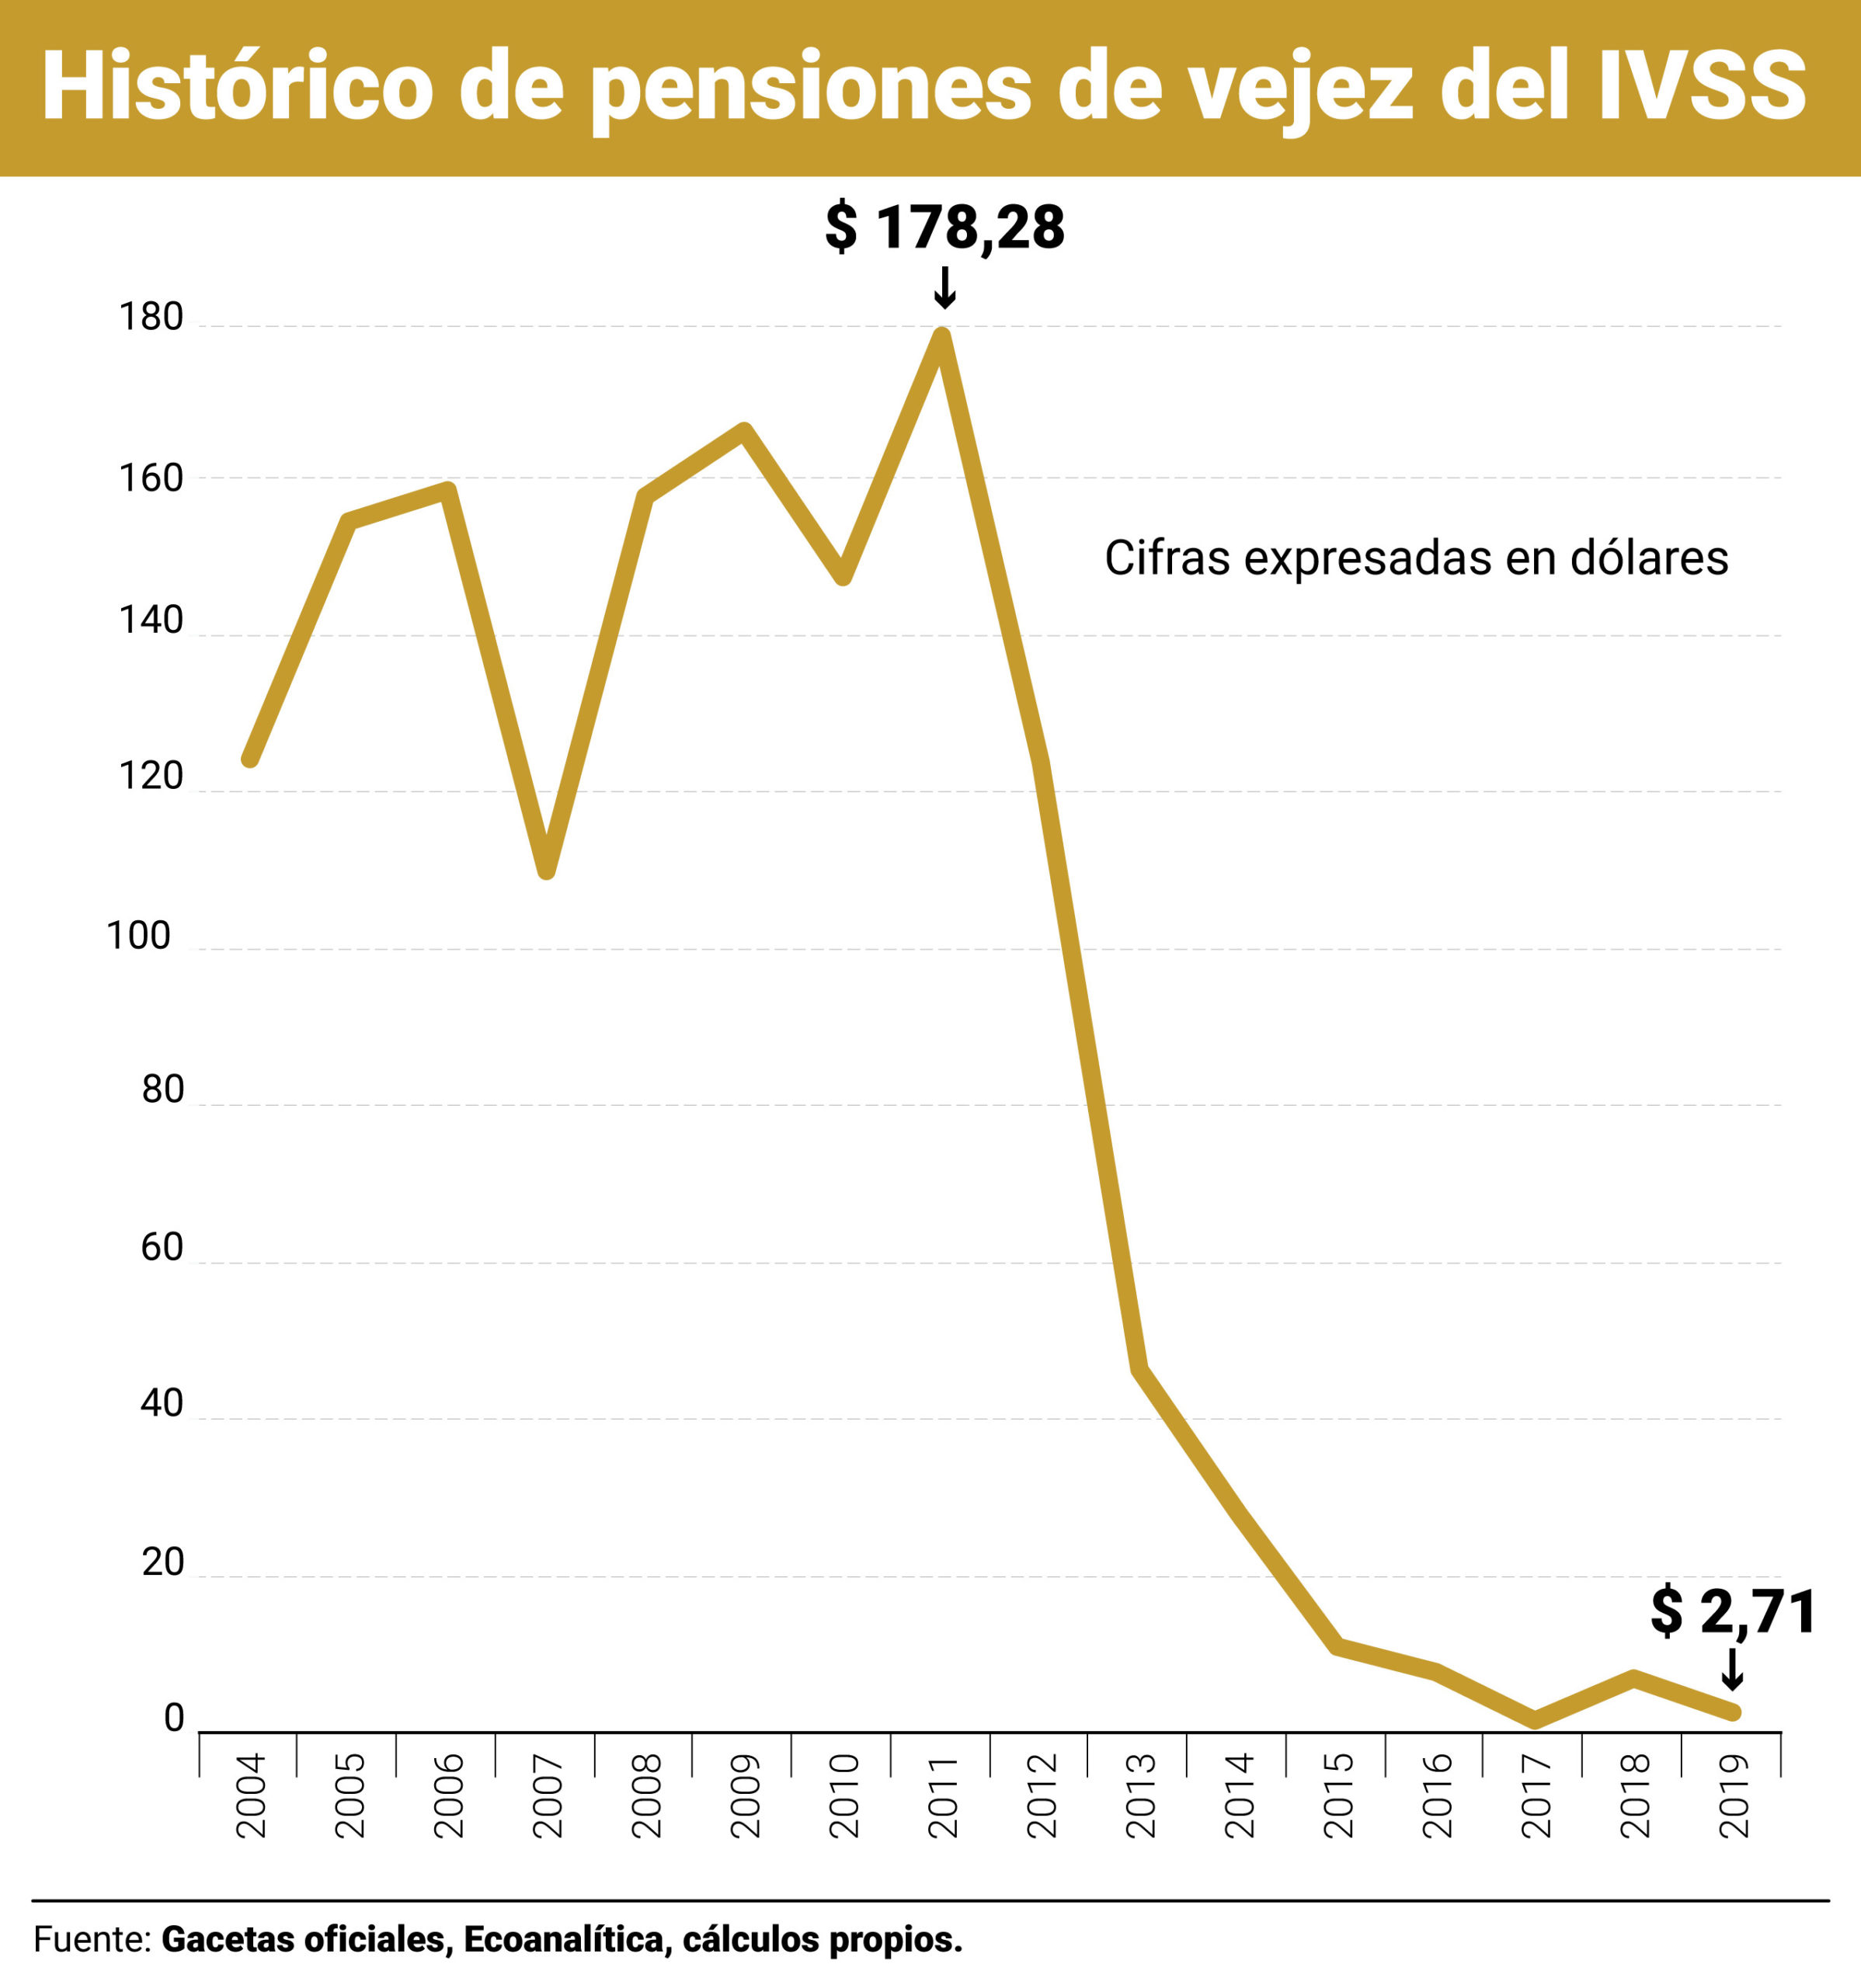 La pensión en Venezuela se redujo de 178 a menos de 5 dólares en ocho años